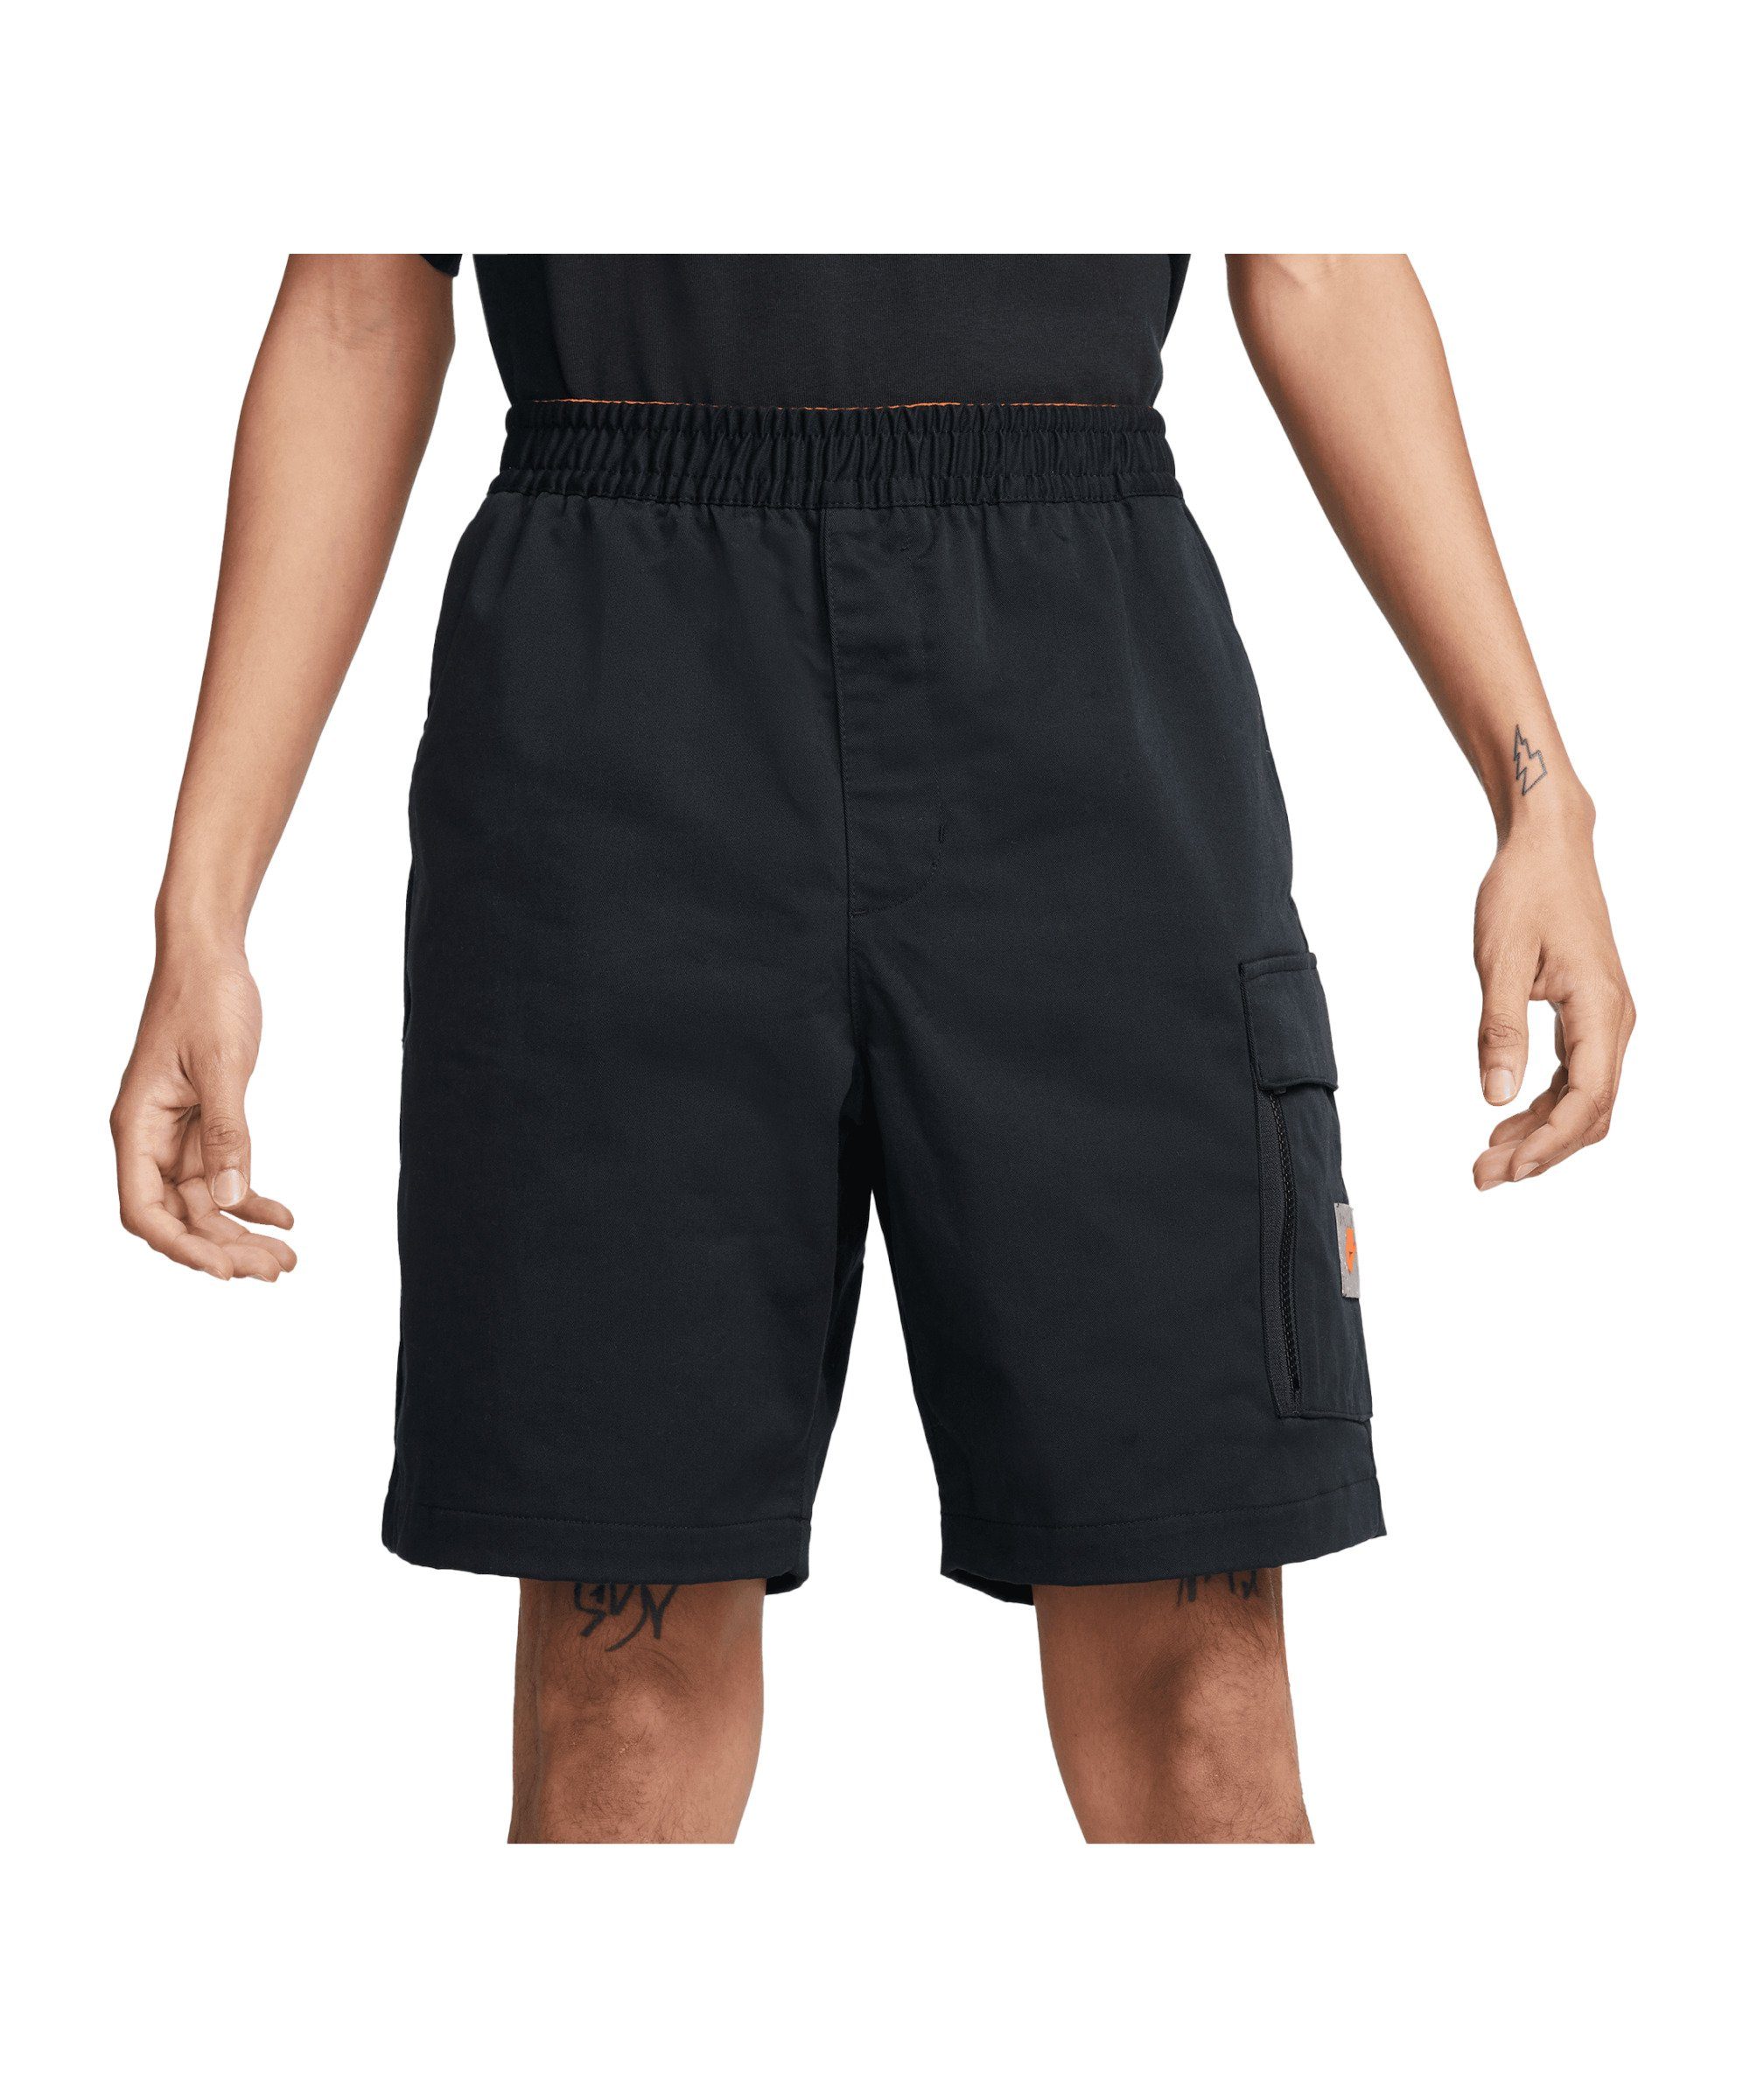 Woven Sportswear schwarzorange Jogginghose Short Nike